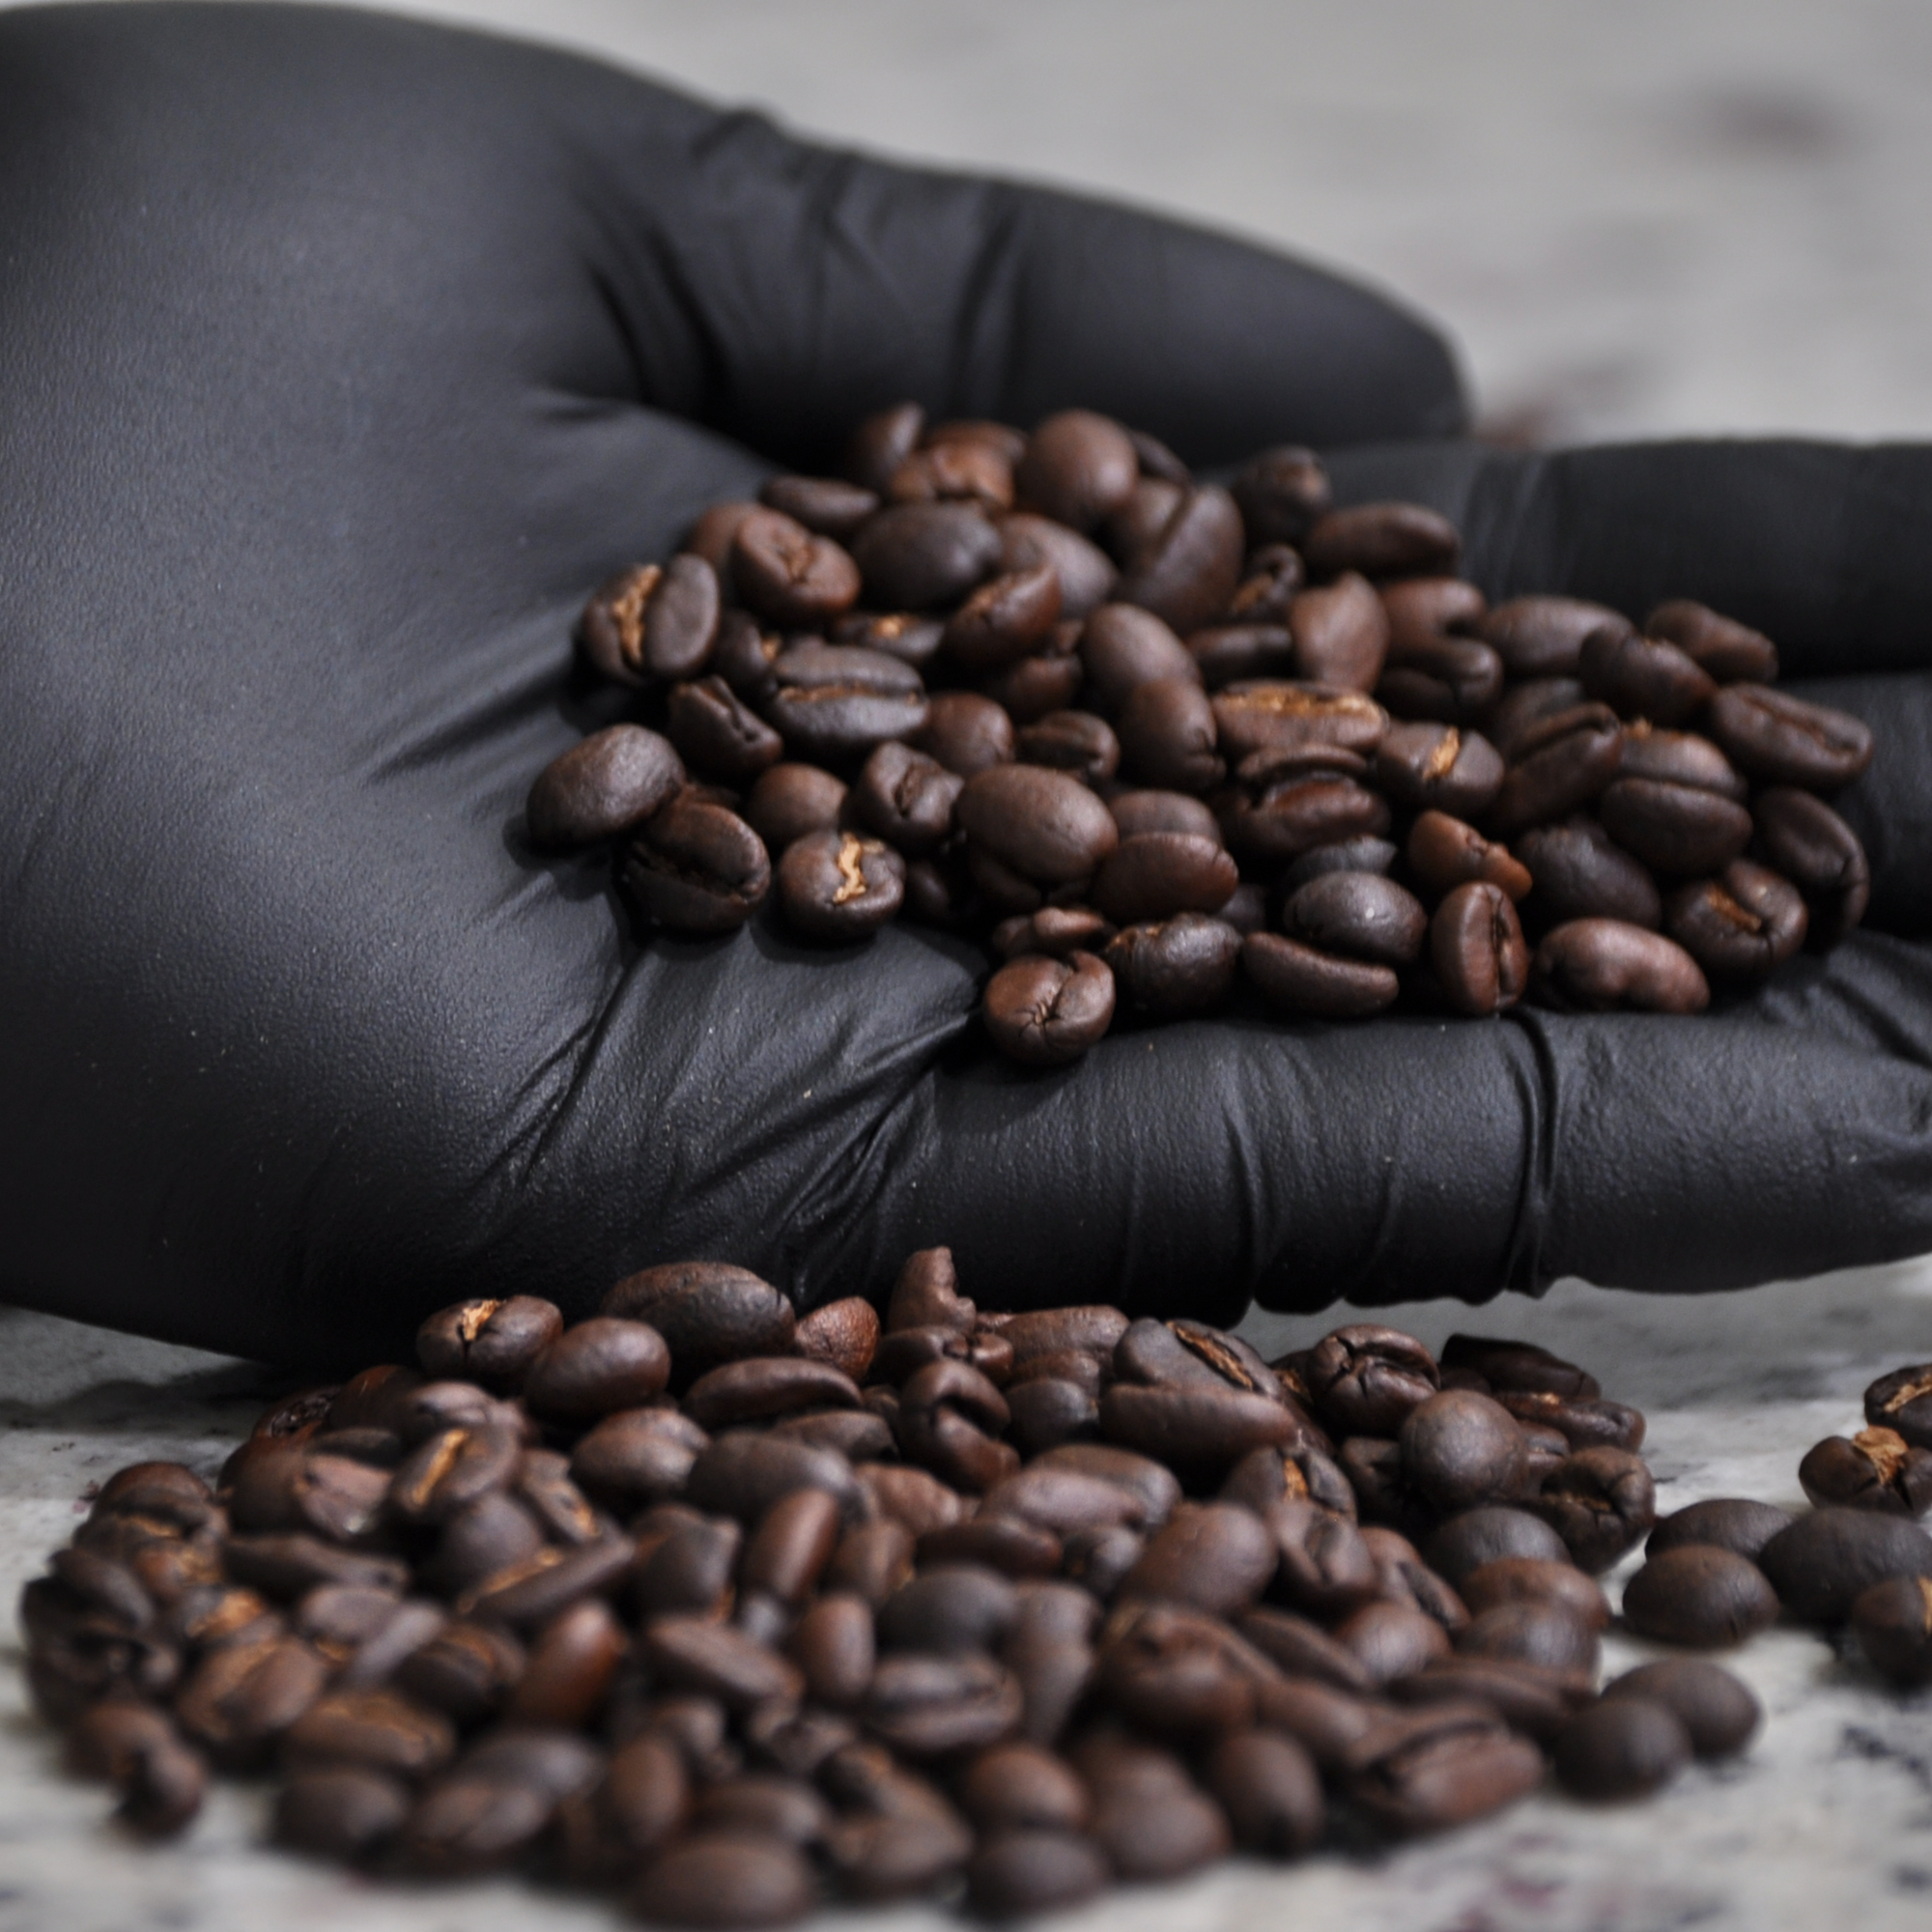 best espresso blend online, best dark roast coffee online, and smoothest coffee online